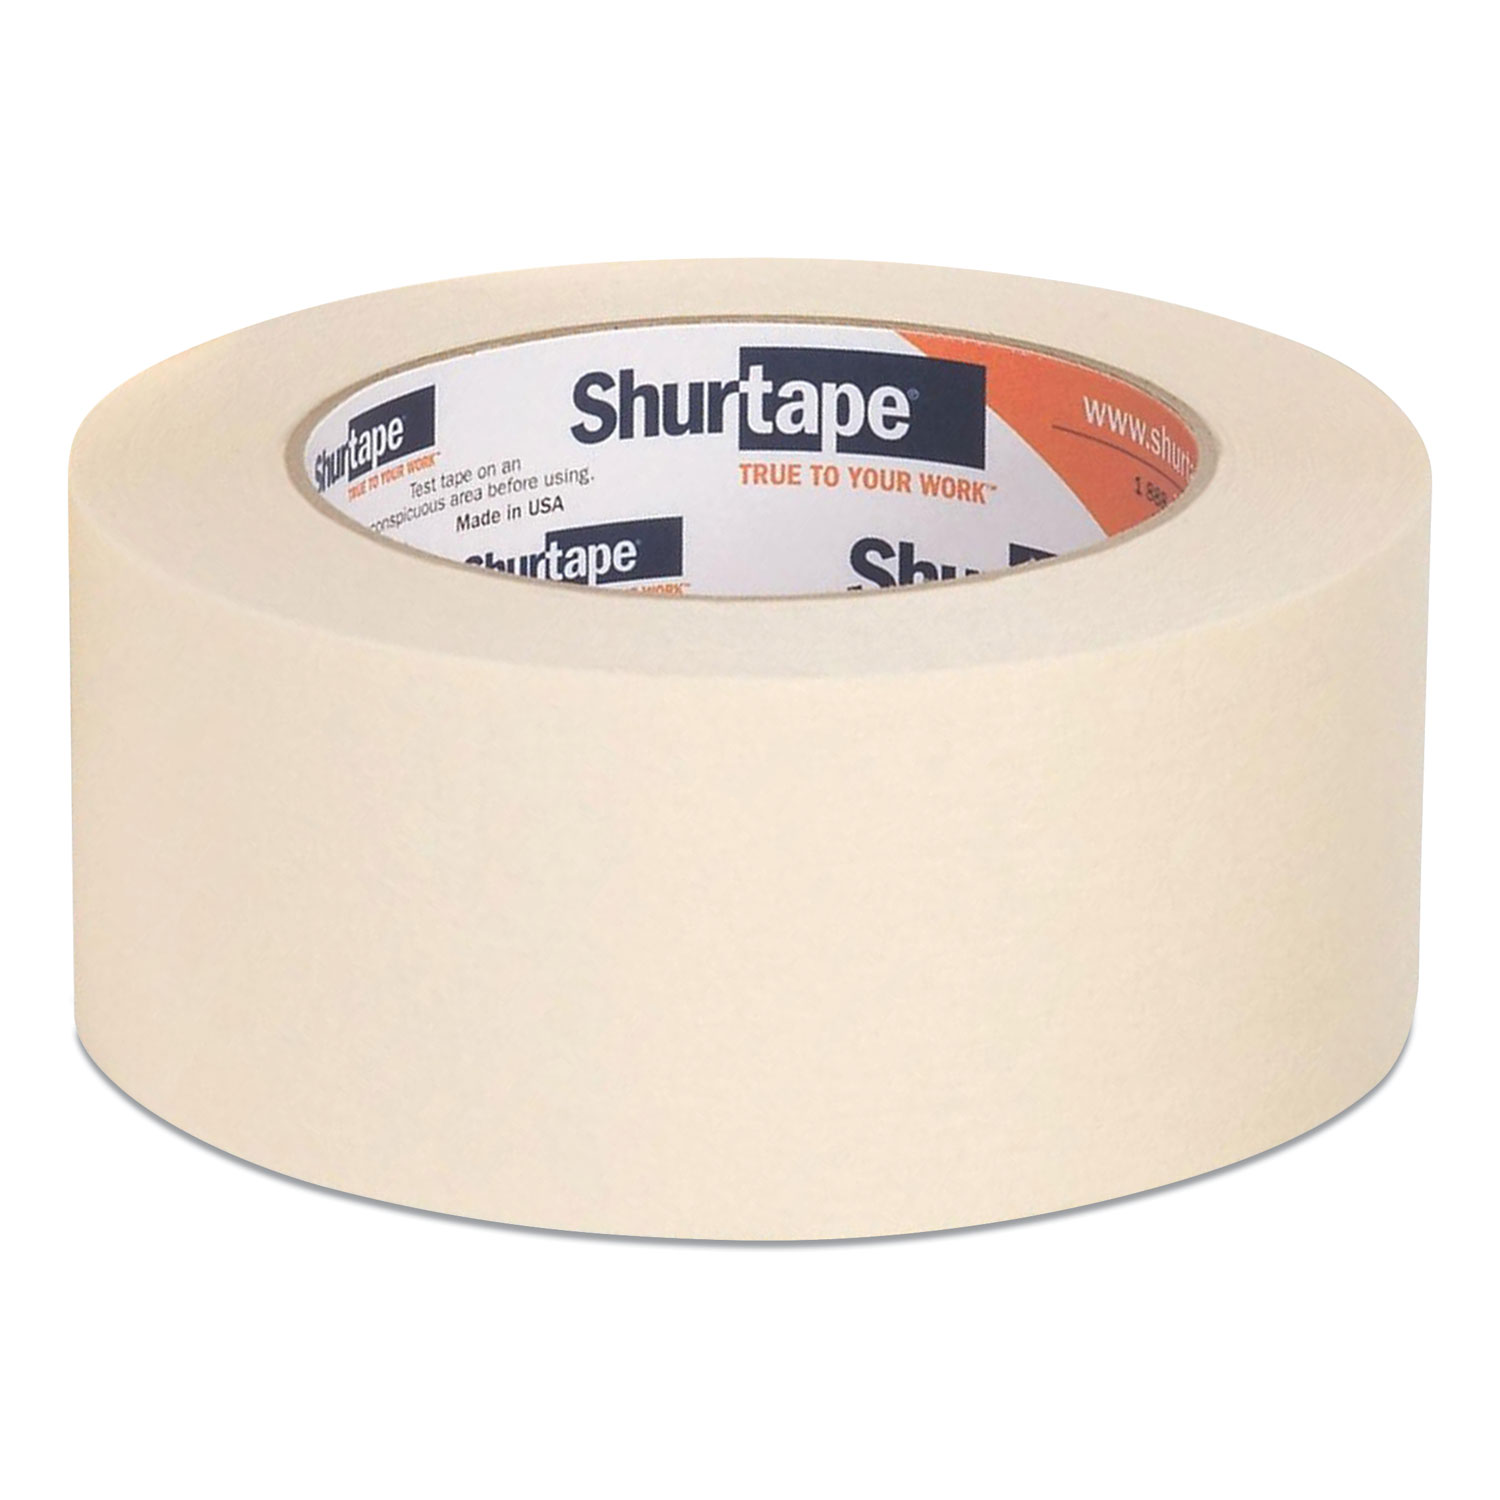  Shurtape SHU100567 CP-83 Utility Grade Masking Tape, 3 Core, 1.5 x 60 yds, Beige (SHU890342) 